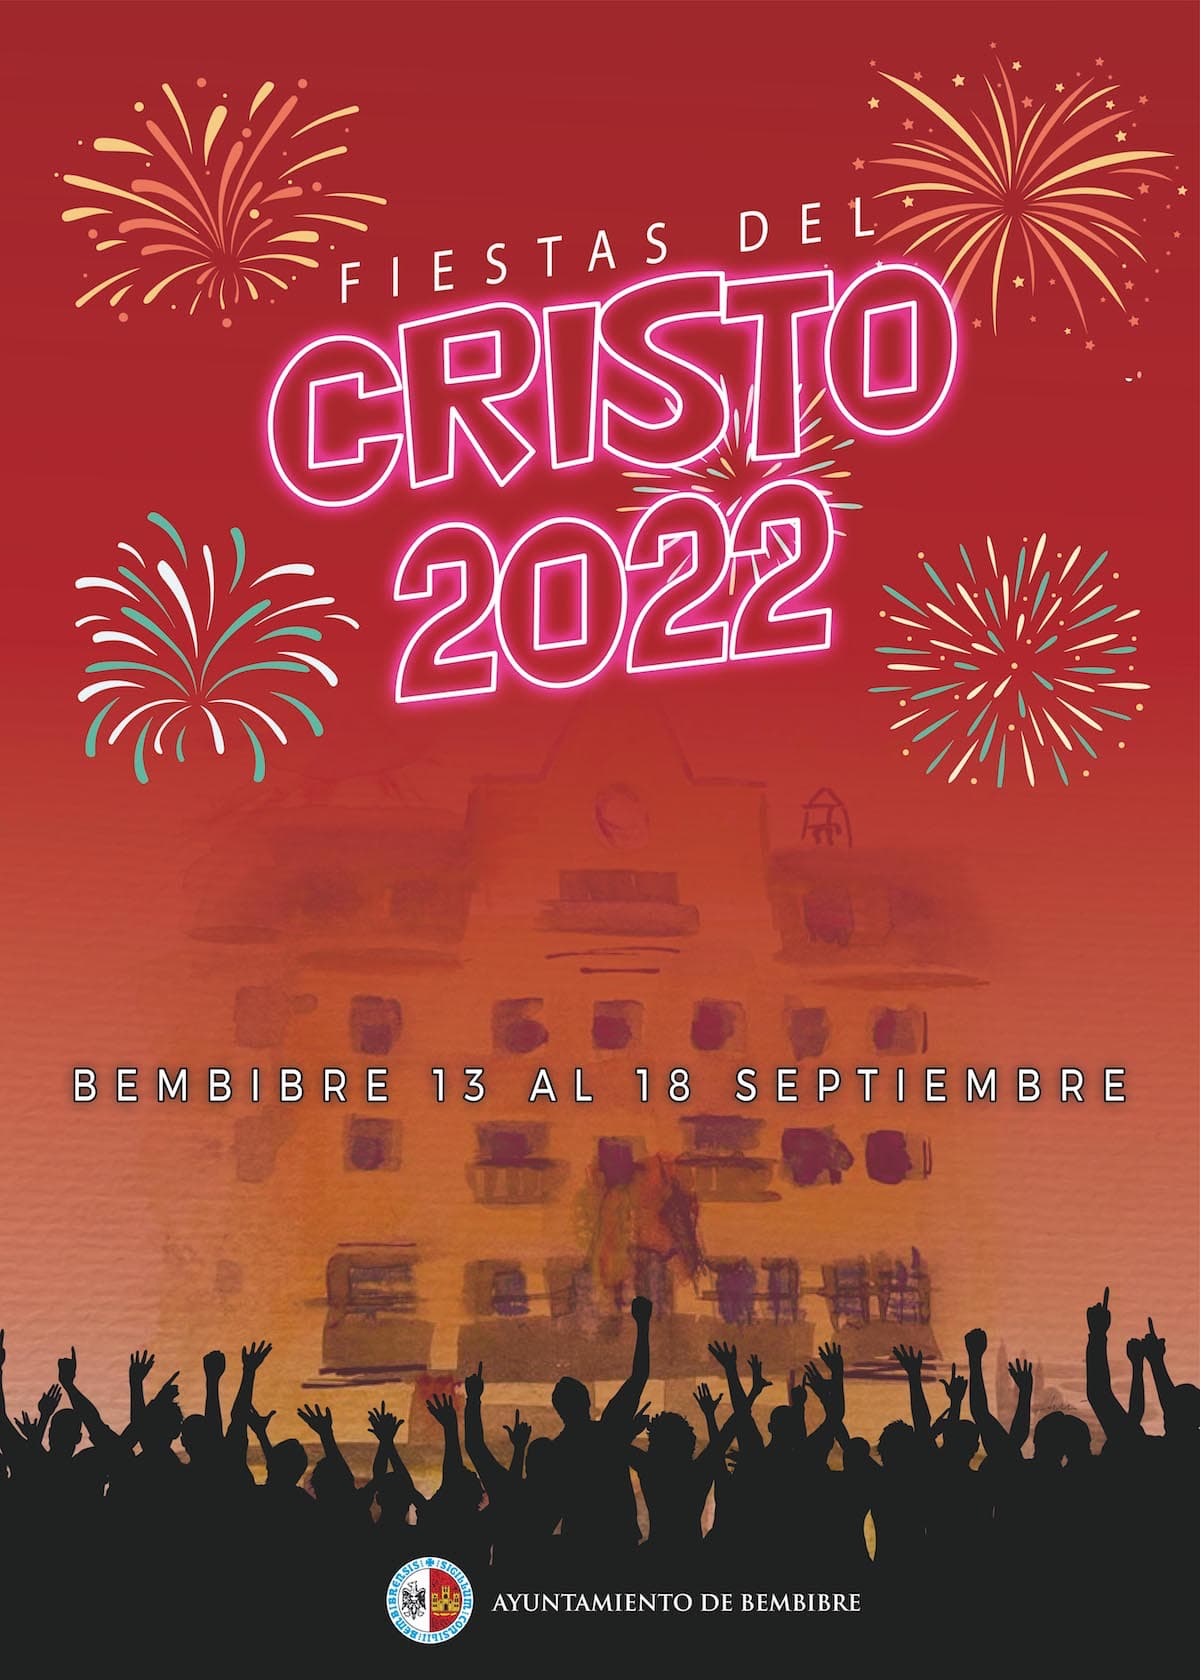 Bembibre Fiestas del Cristo 2022 cartel